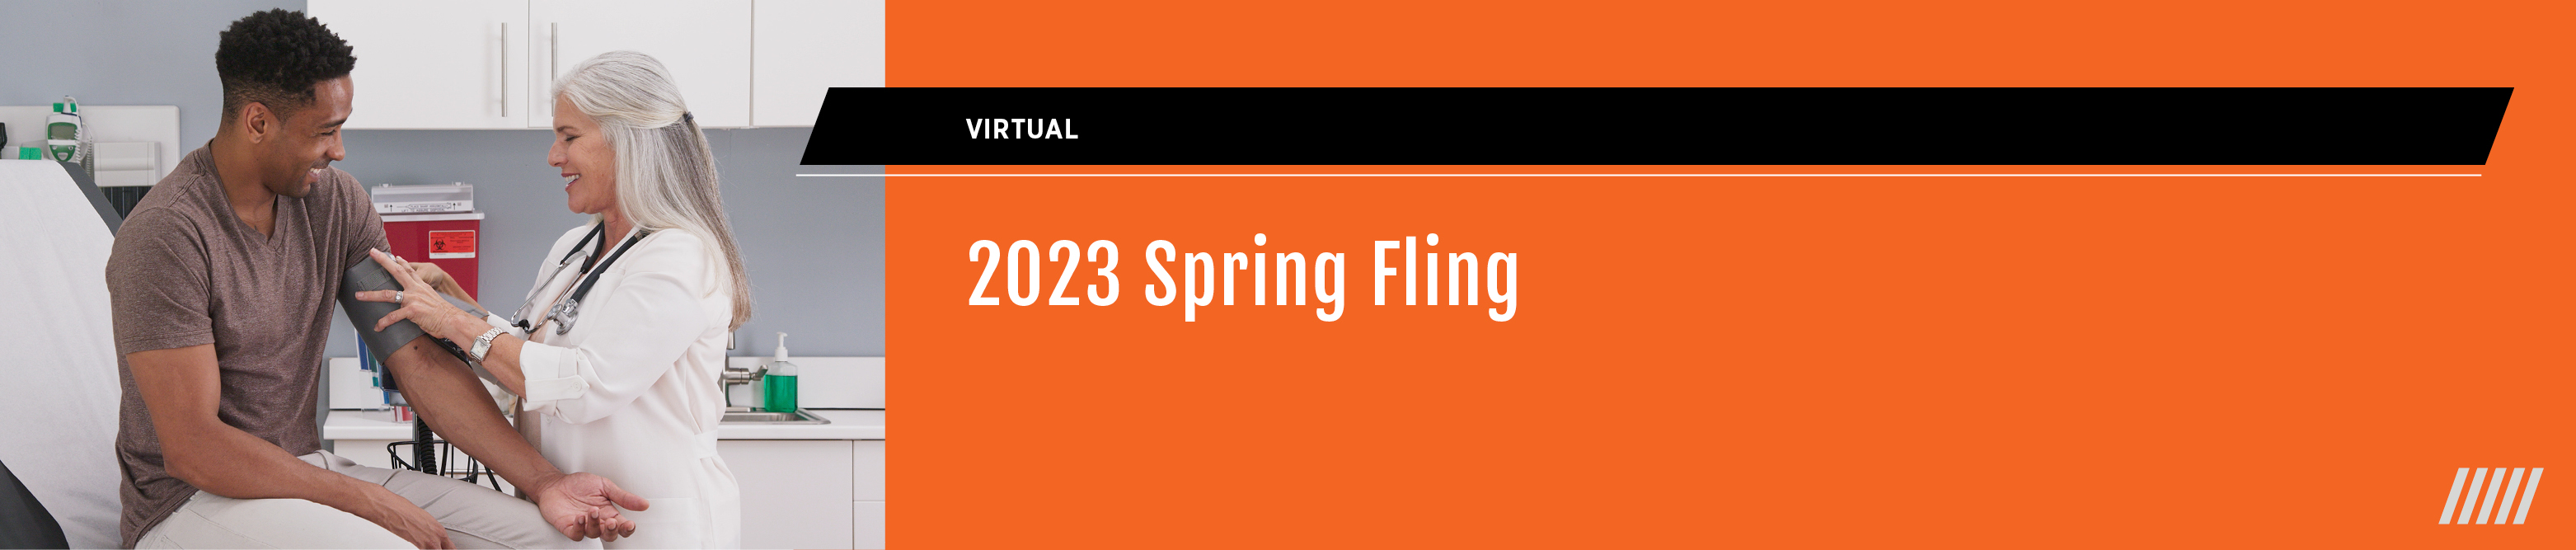 2023 Virtual Spring Fling Banner